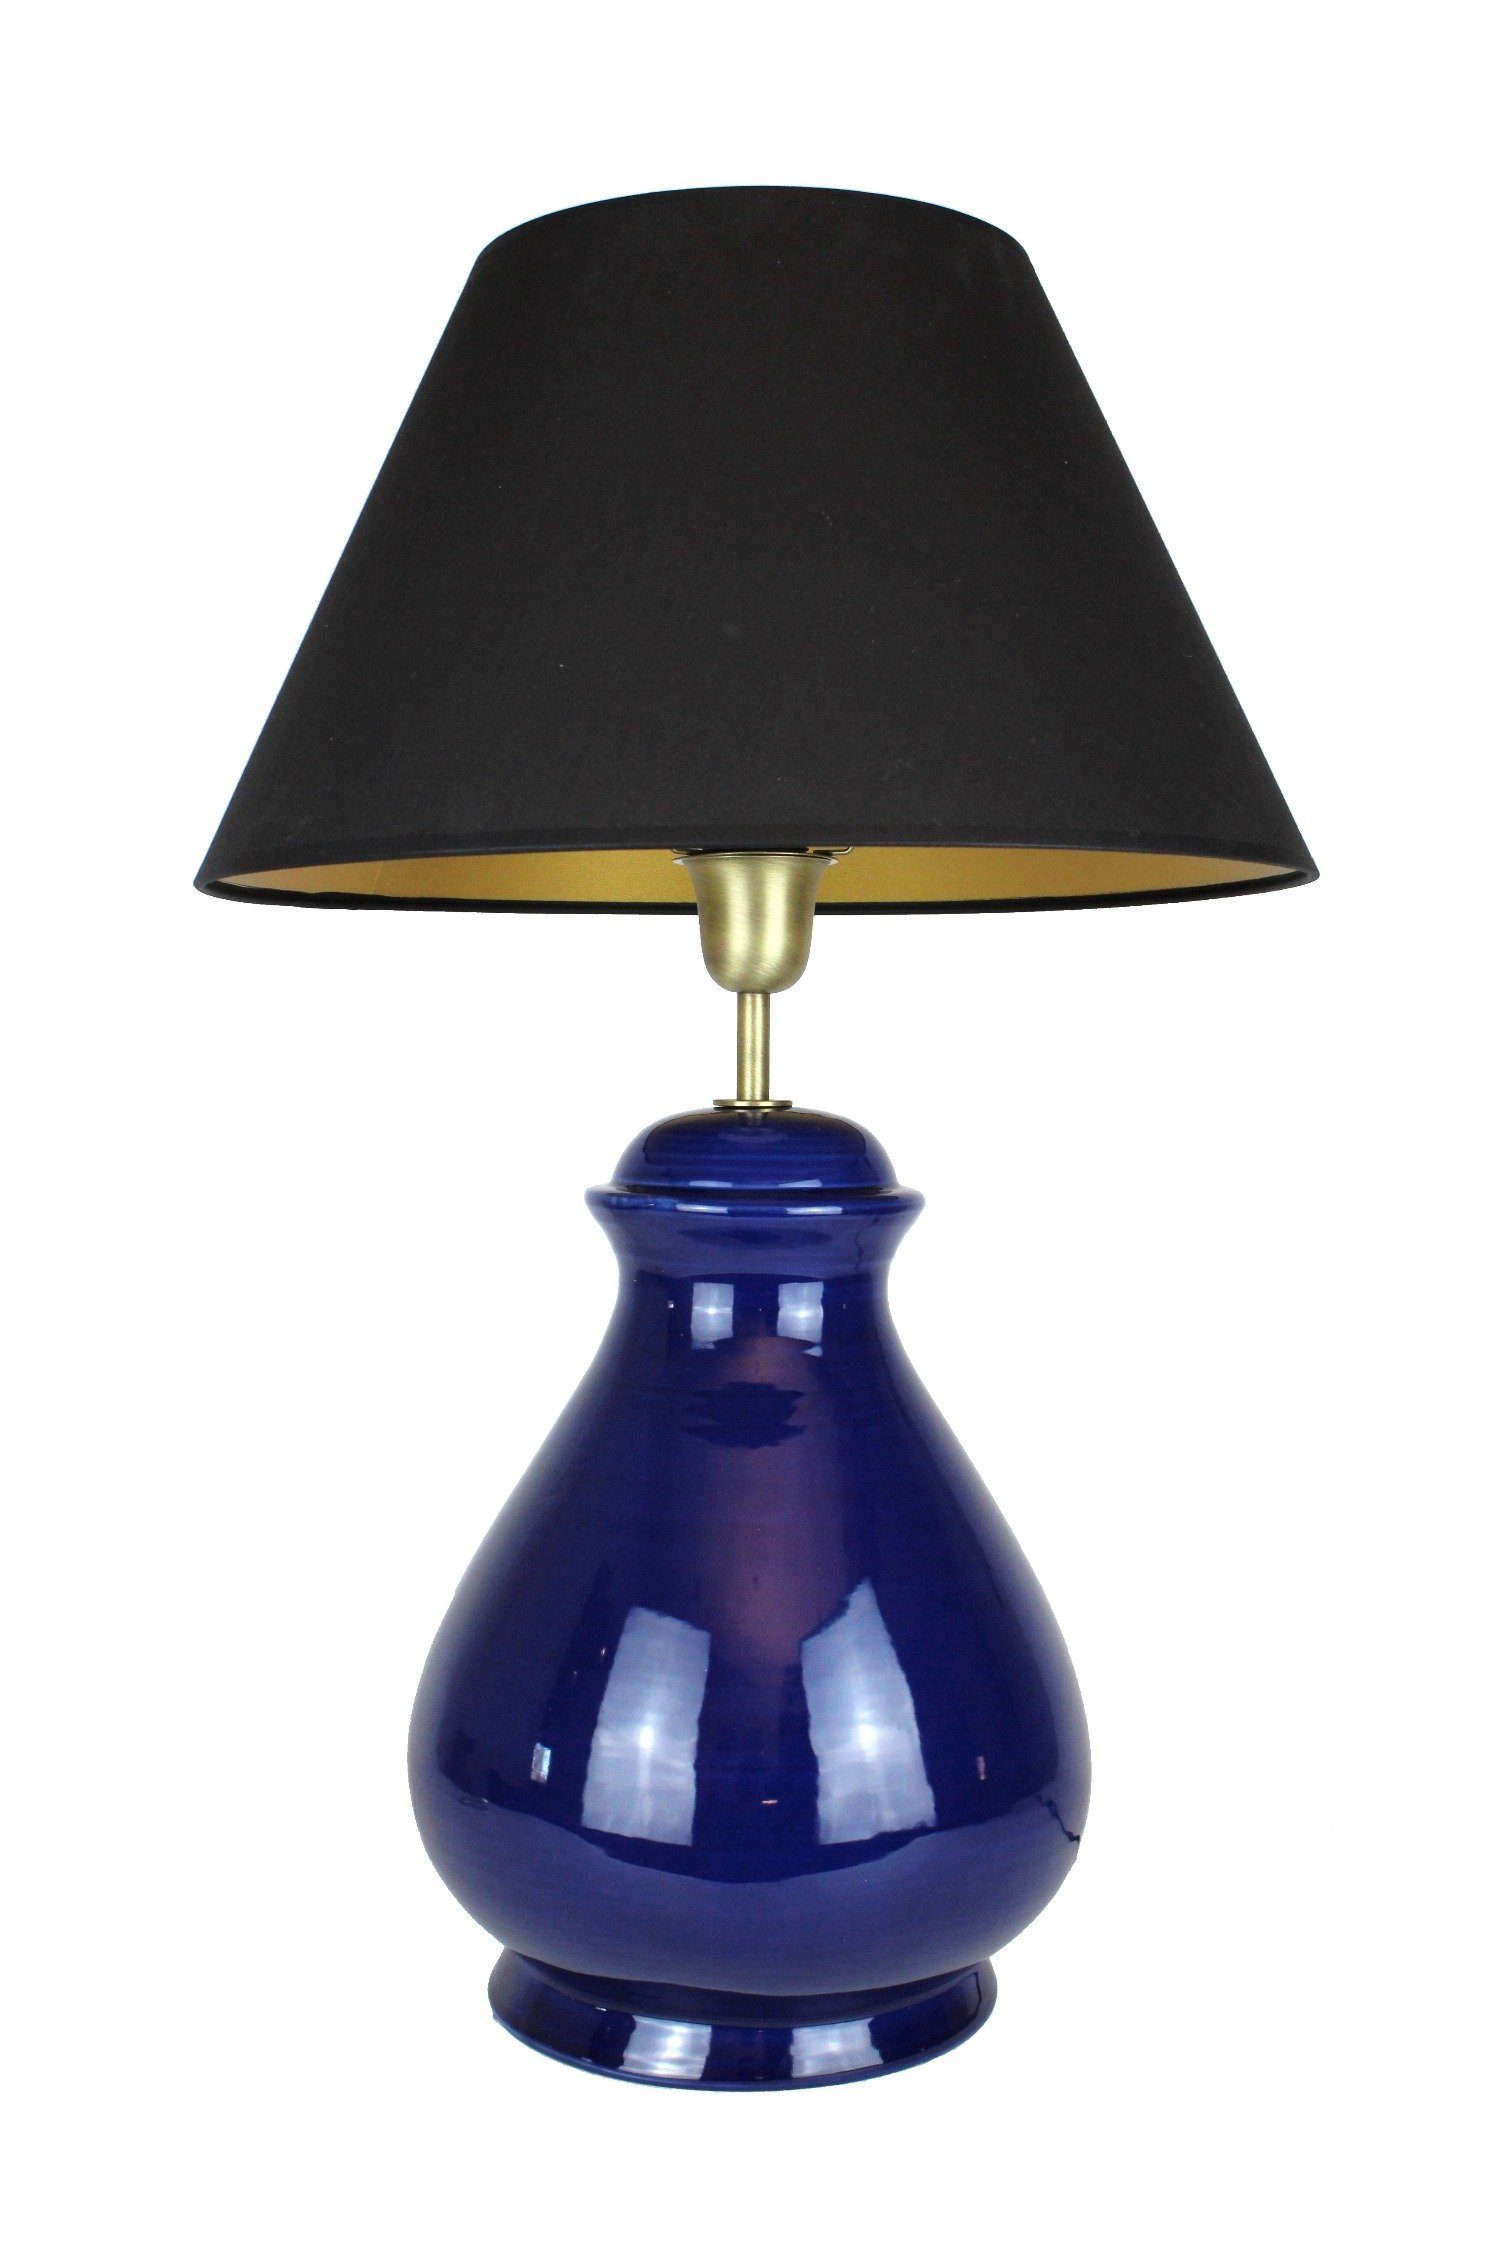 Signature Home mit schwarz, Collection Nachttischlampe dunkelblau Leuchtmittel, Keramik ohne Lampenschirm Tischlampe Nachttischlampe warmweiß